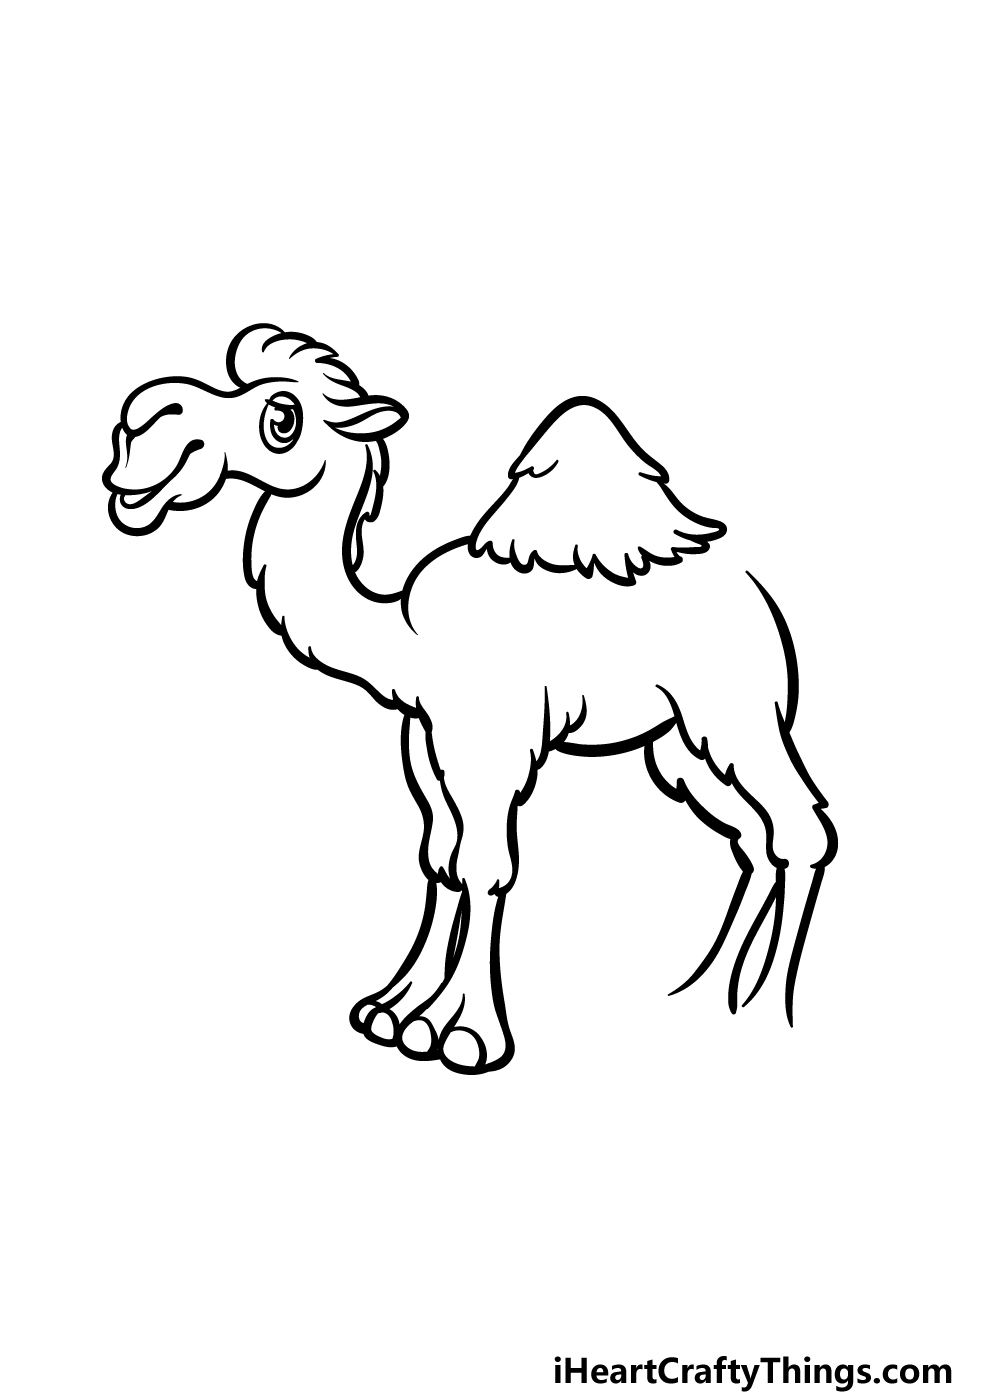 how to draw a cartoon camel step 5